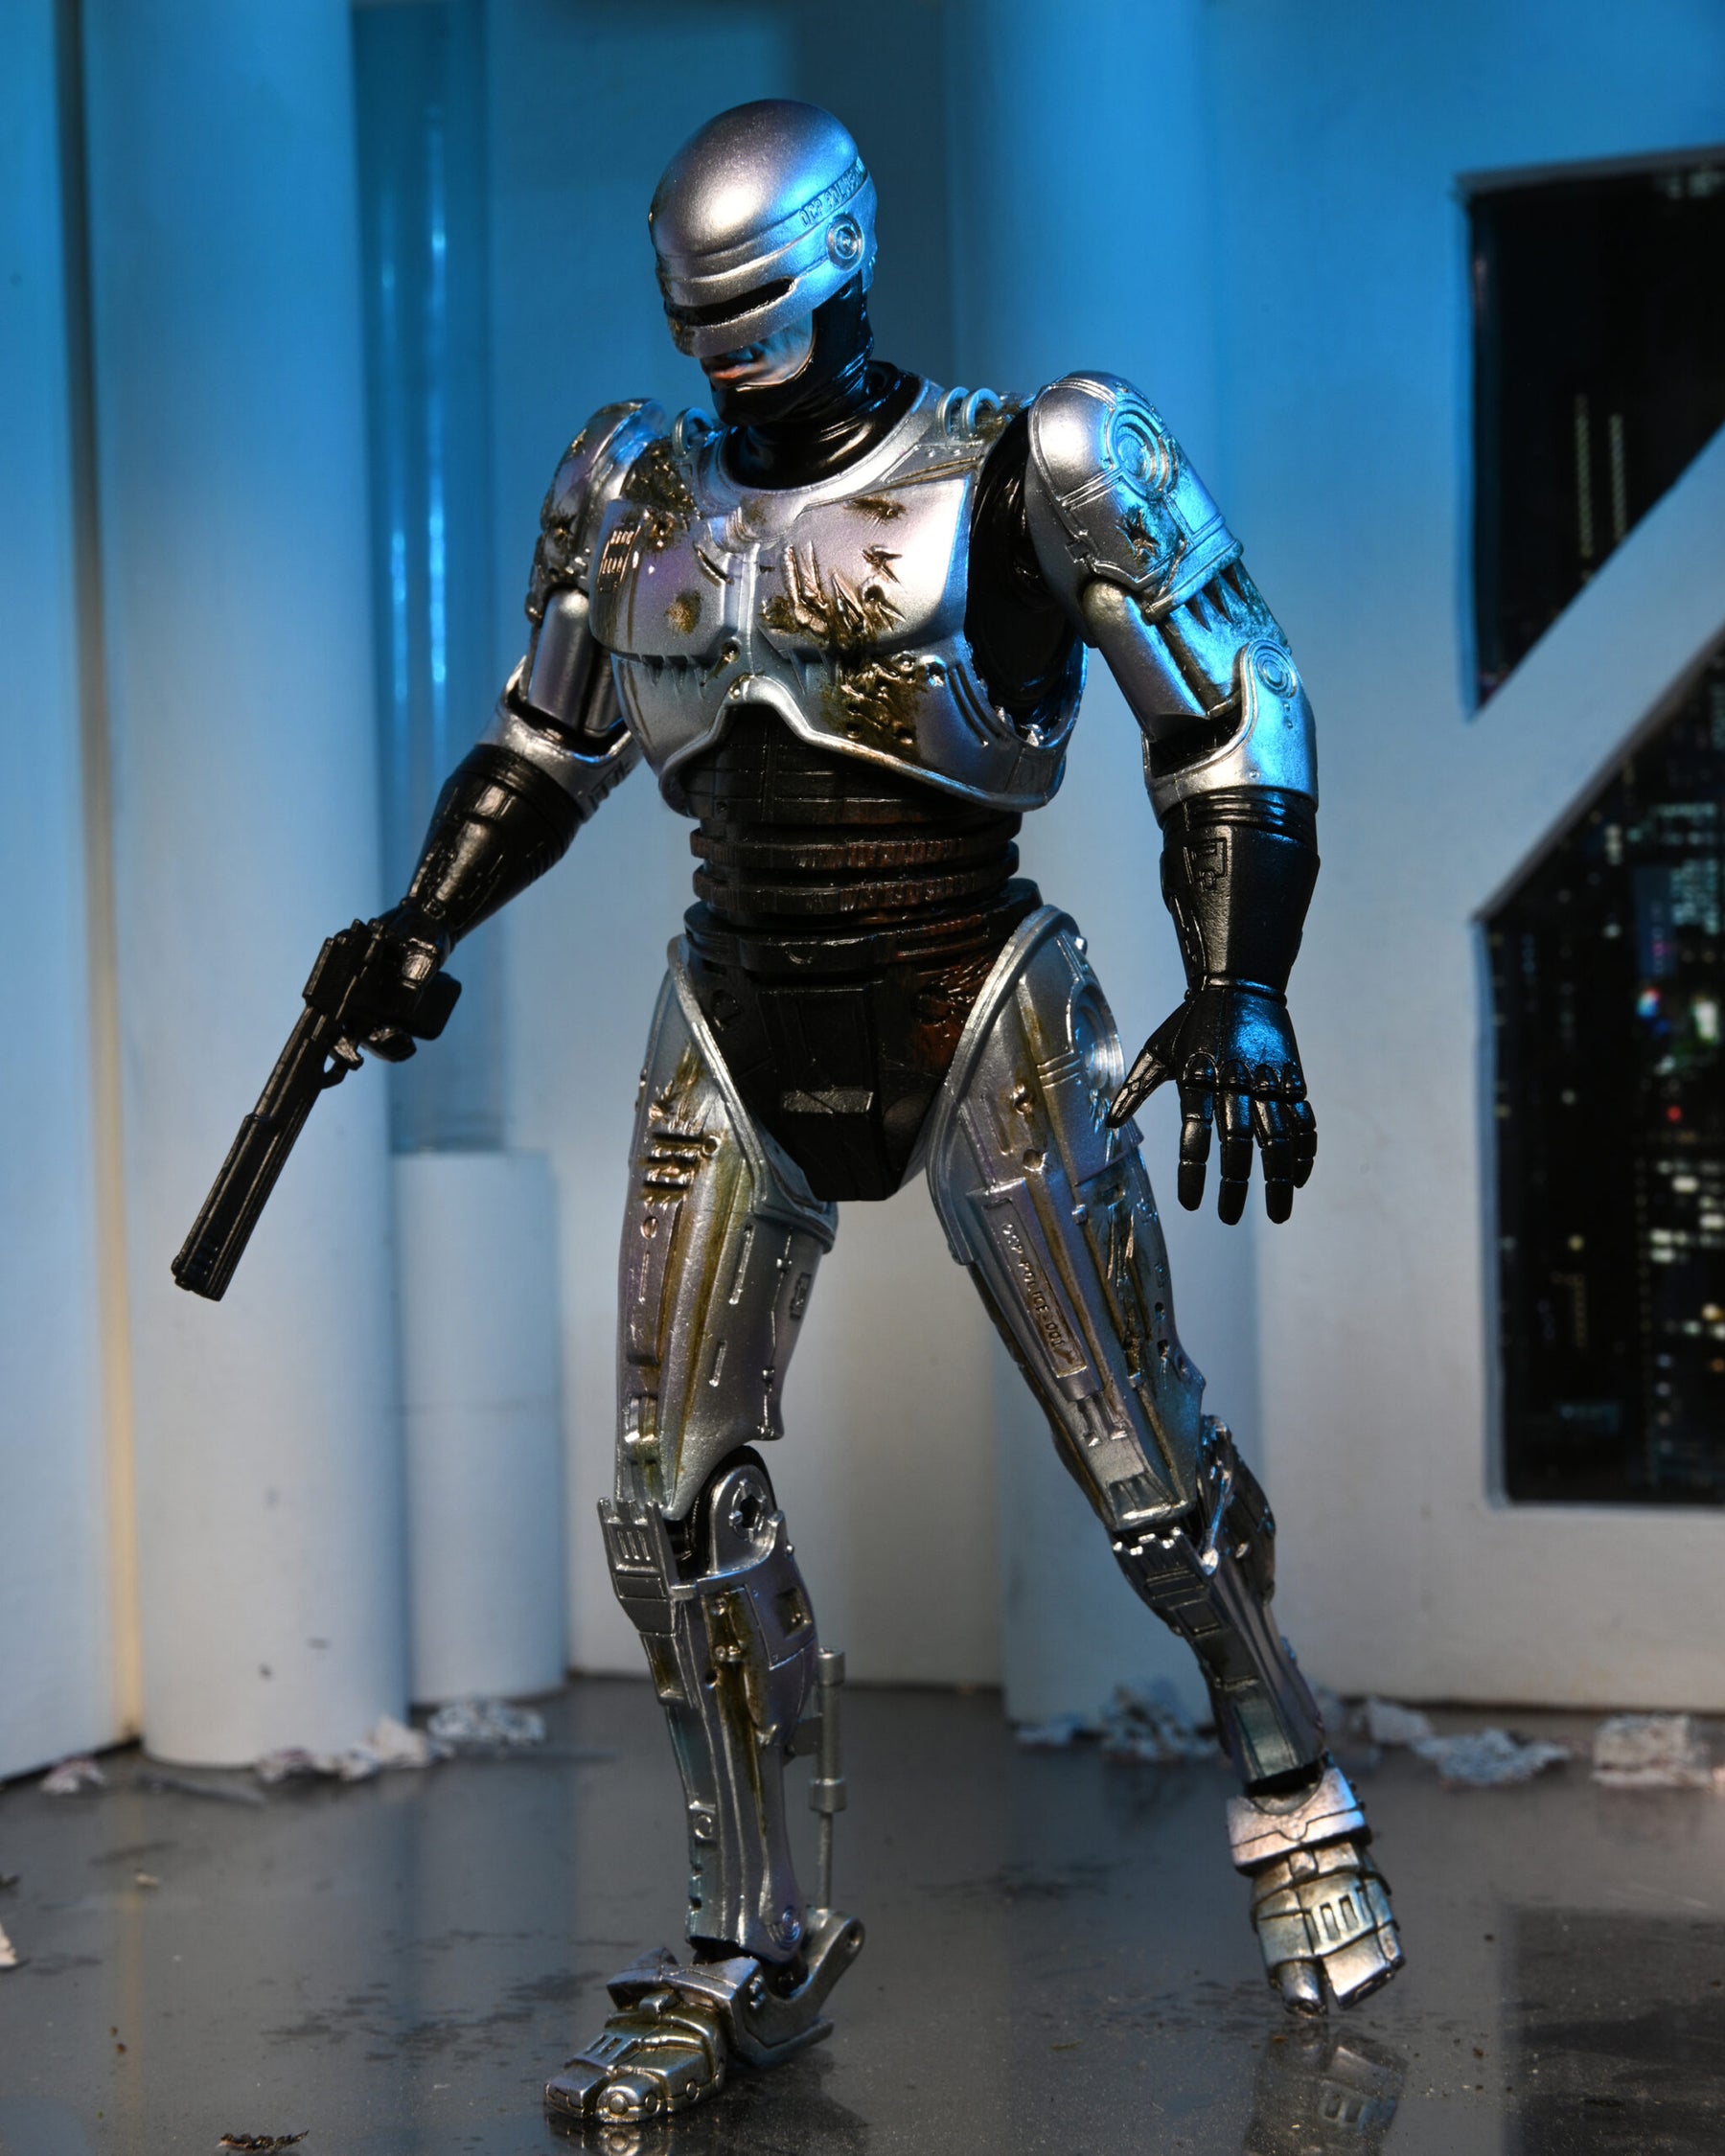 RoboCop Ultimate 7 Alex Murphy (OCP Uniform) Figure From NECA